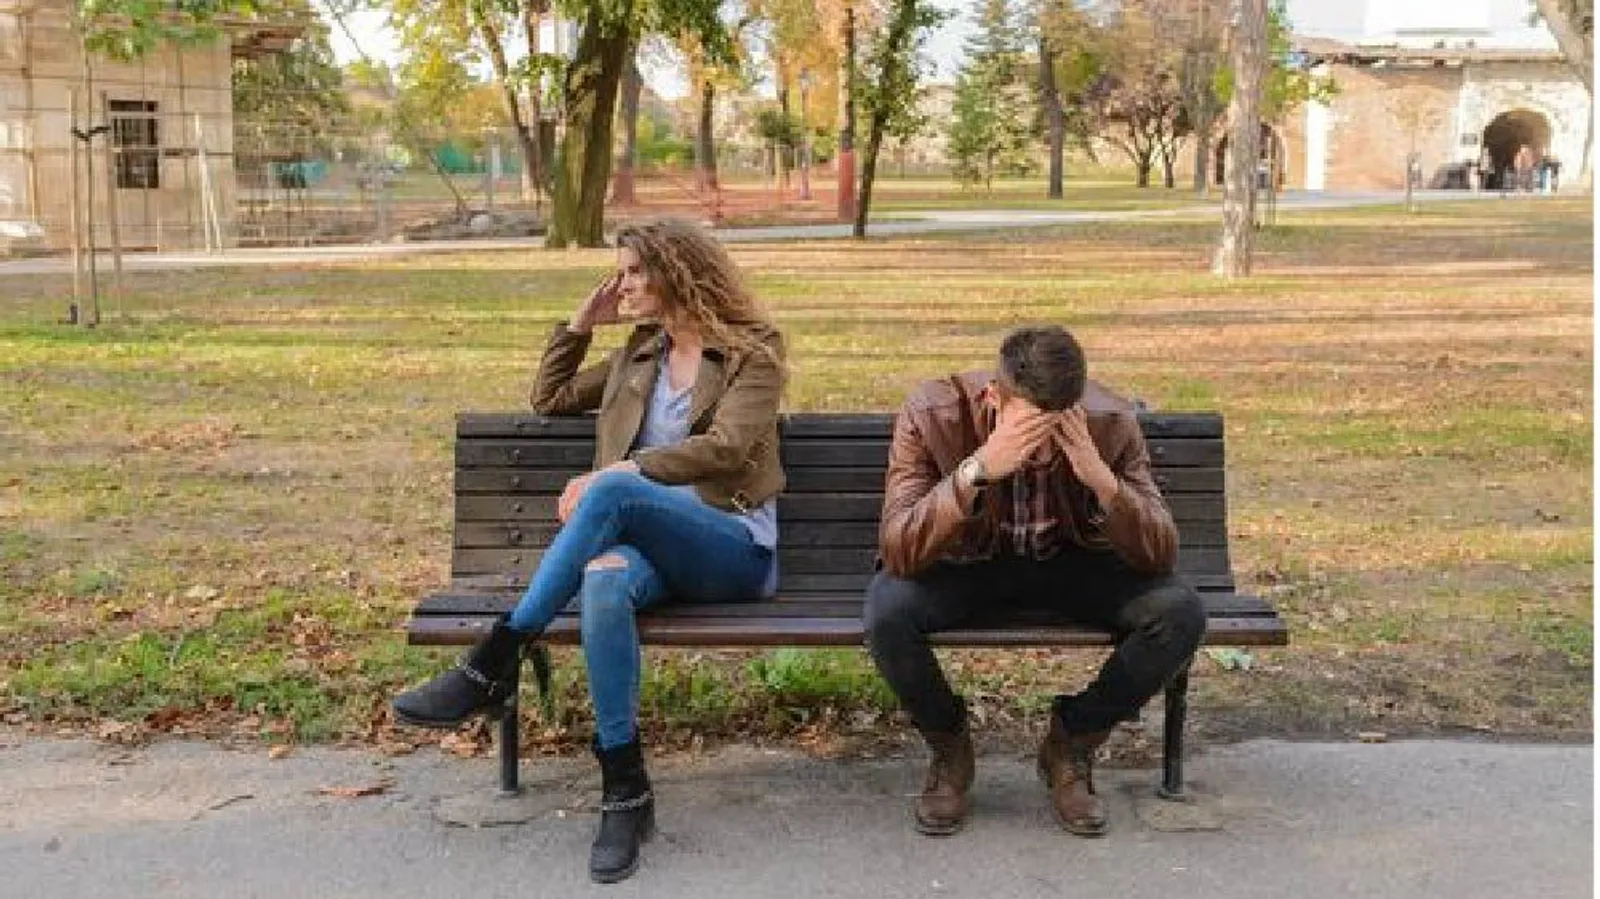 5 Hal Buruk Ini Bisa Terjadi saat Bertengkar dengan Pasangan